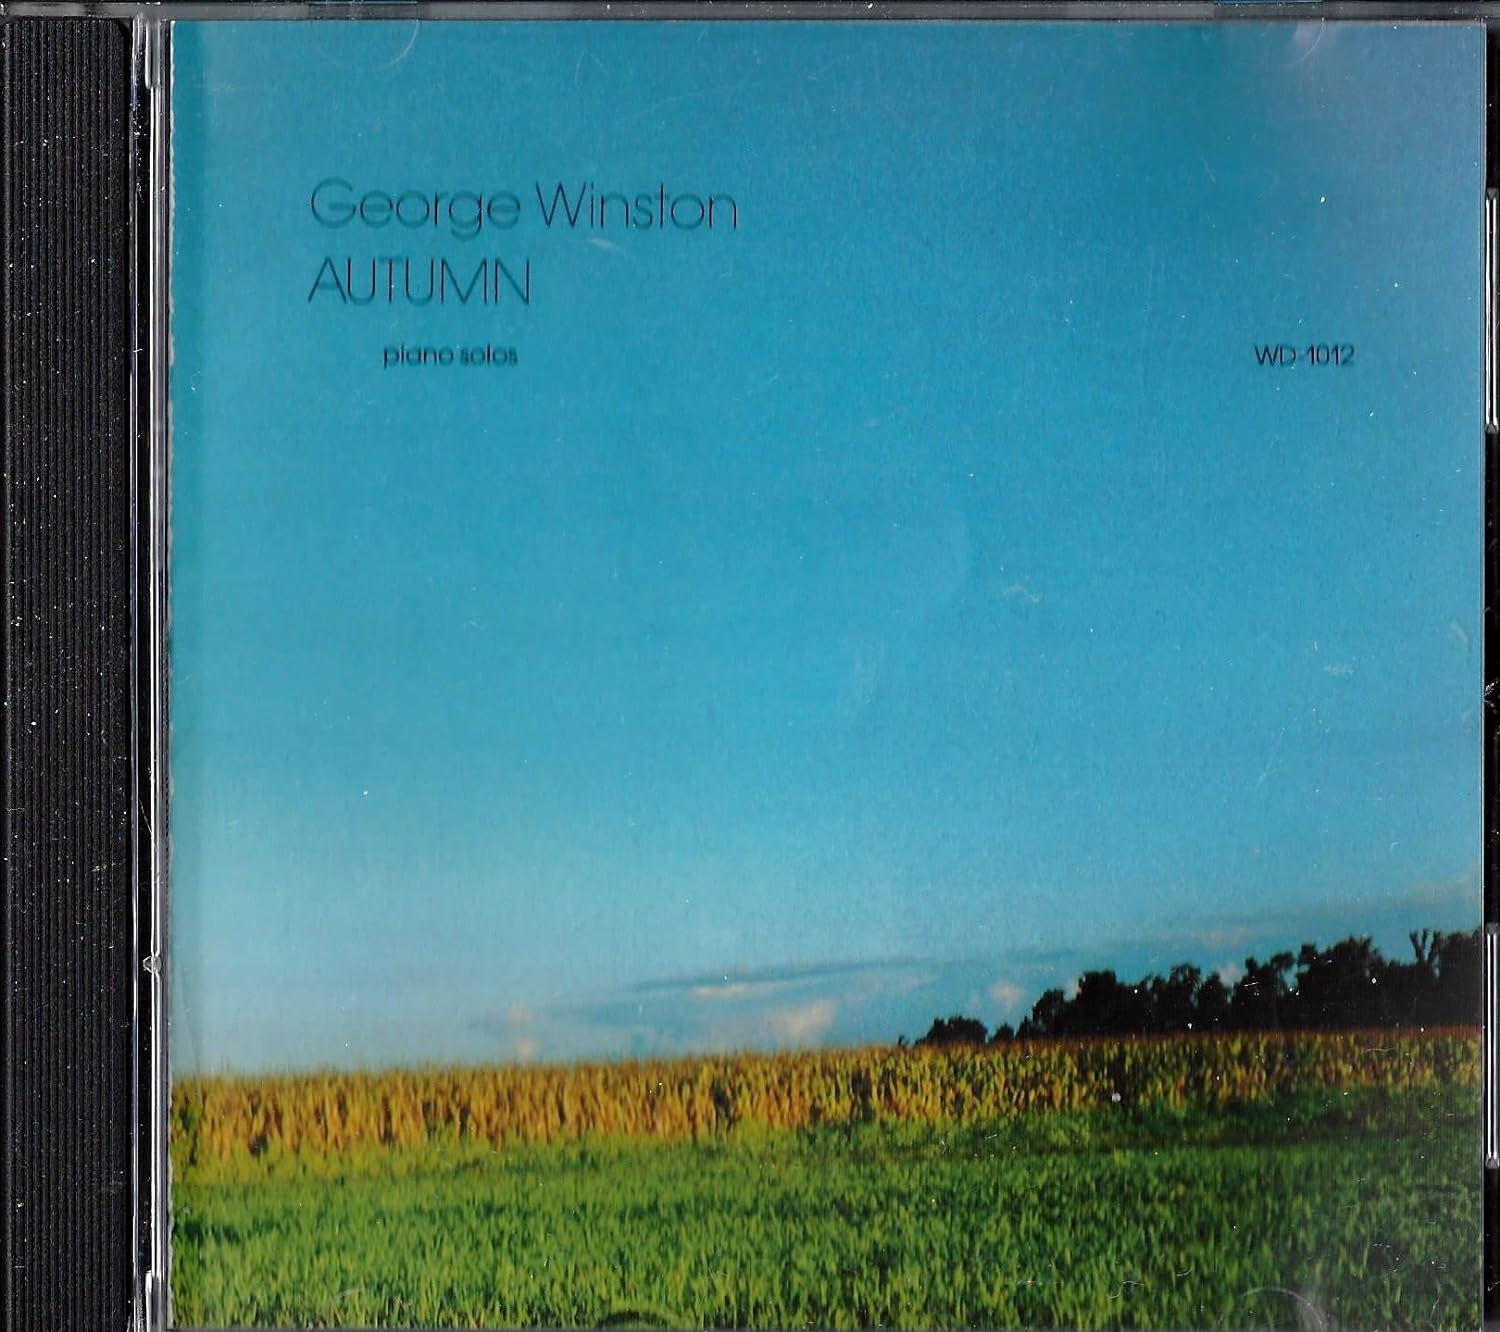 George Winston- Autumn